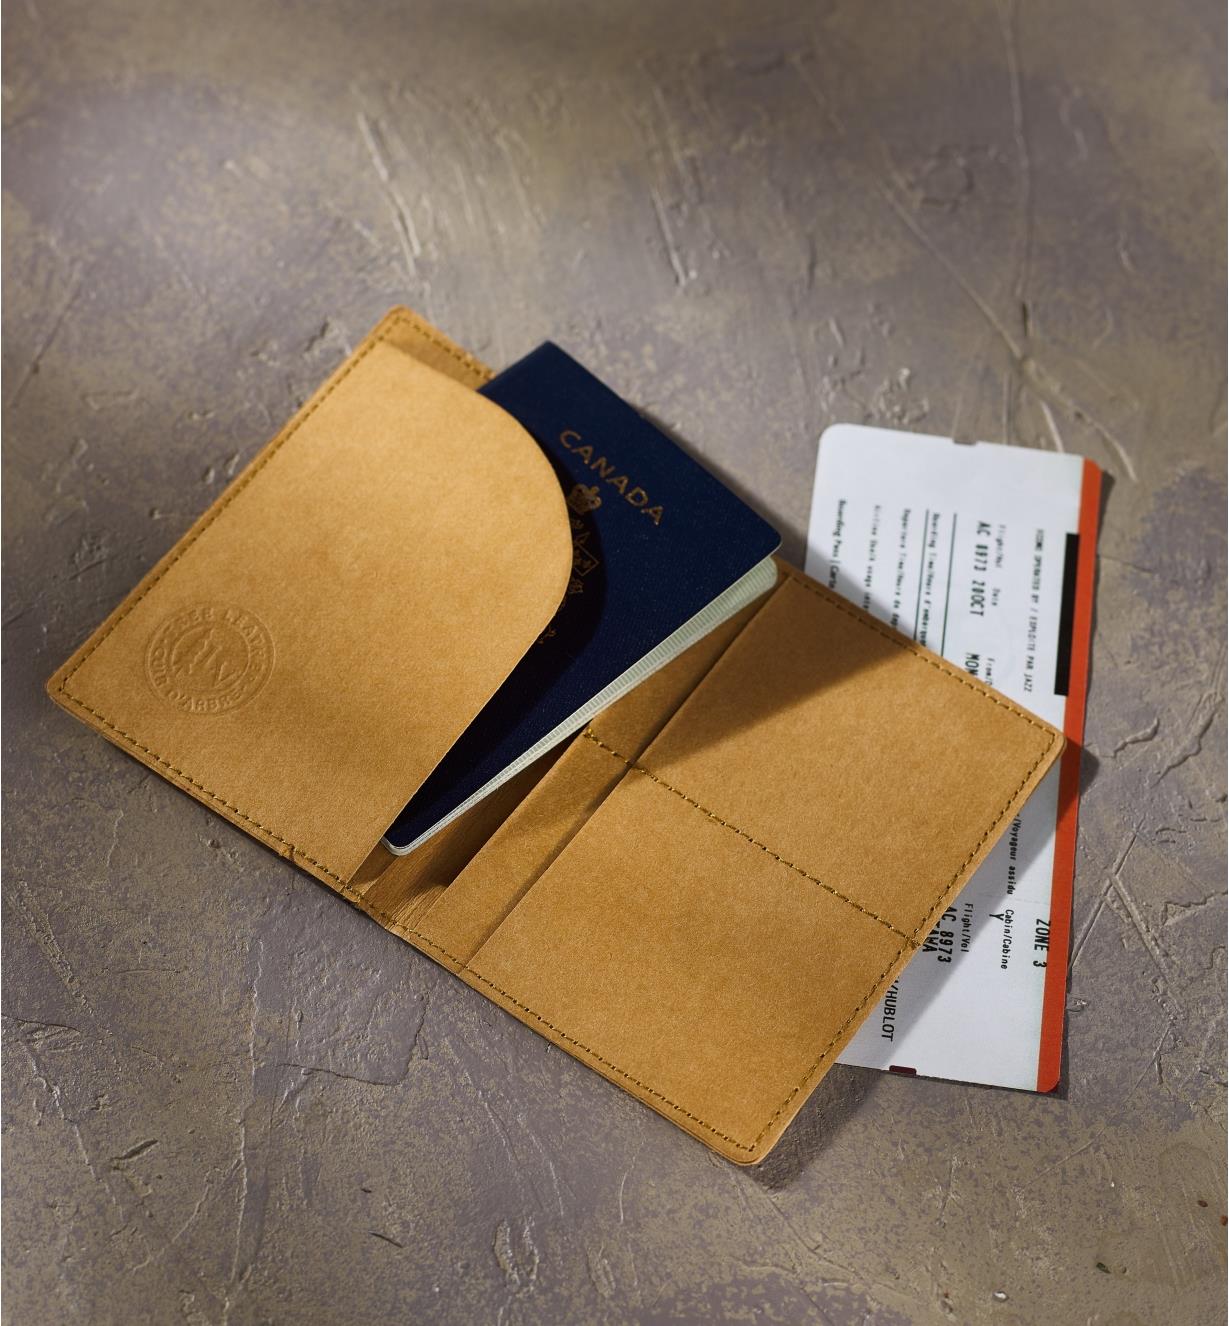 Porte-passeport Tree Leather contenant un passeport déposé sur un billet d’avion sur une table